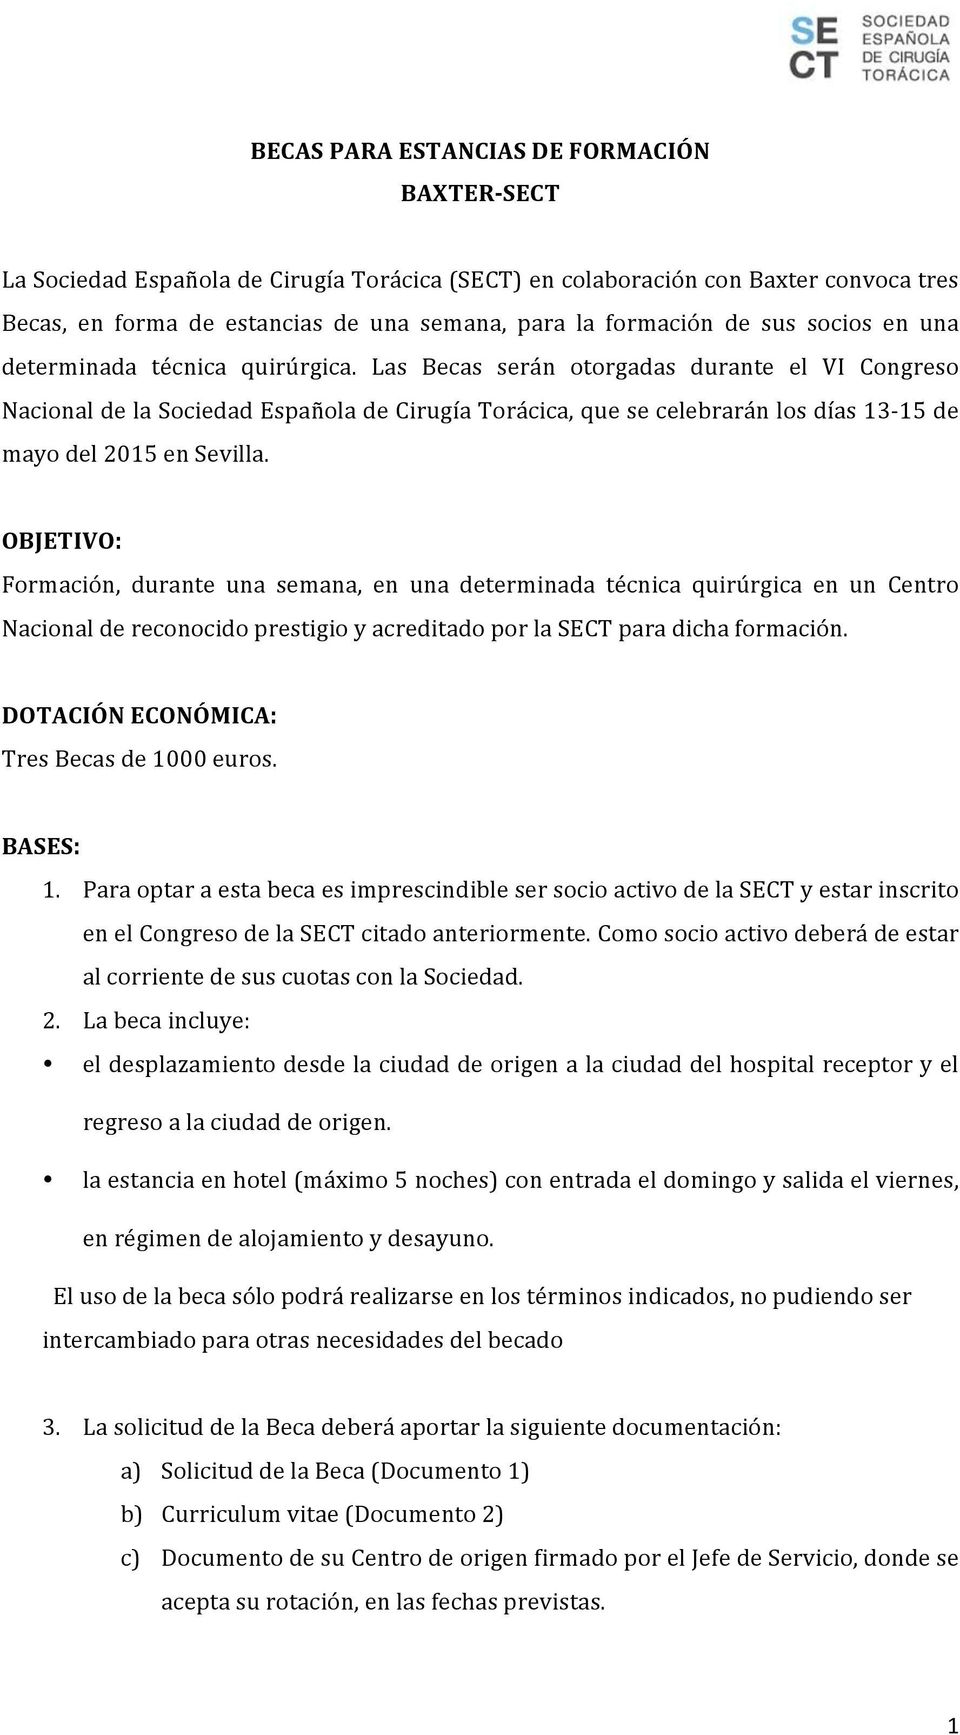 Las Becas serán otorgadas durante el VI Congreso Nacional de la Sociedad Española de Cirugía Torácica, que se celebrarán los días 13-15 de mayo del 2015 en Sevilla.